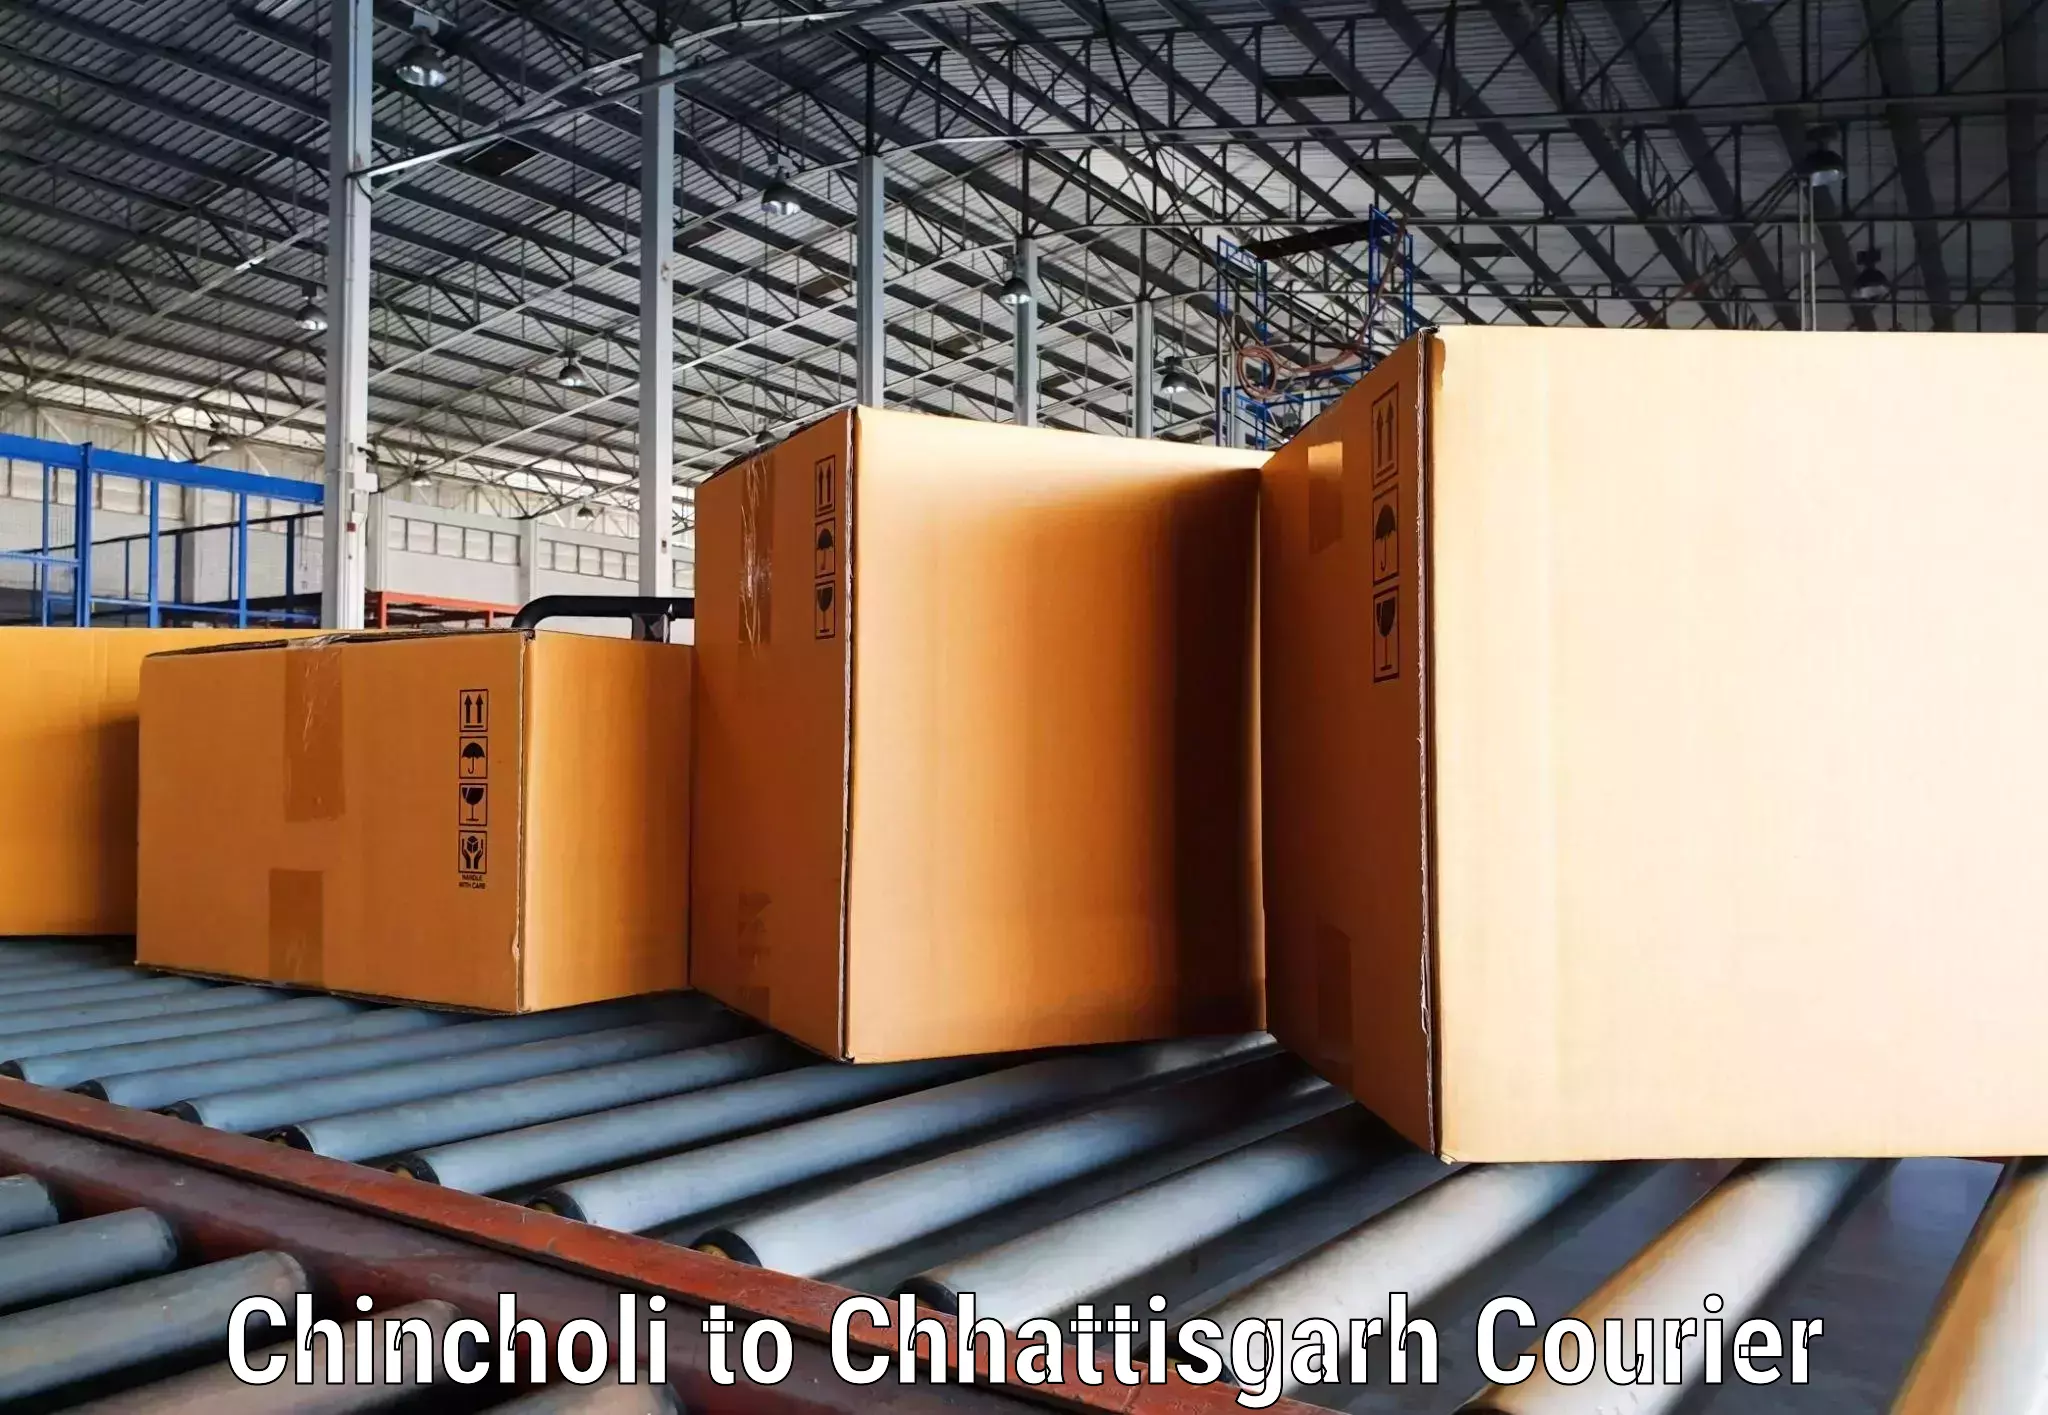 Multi-national courier services Chincholi to Chhattisgarh